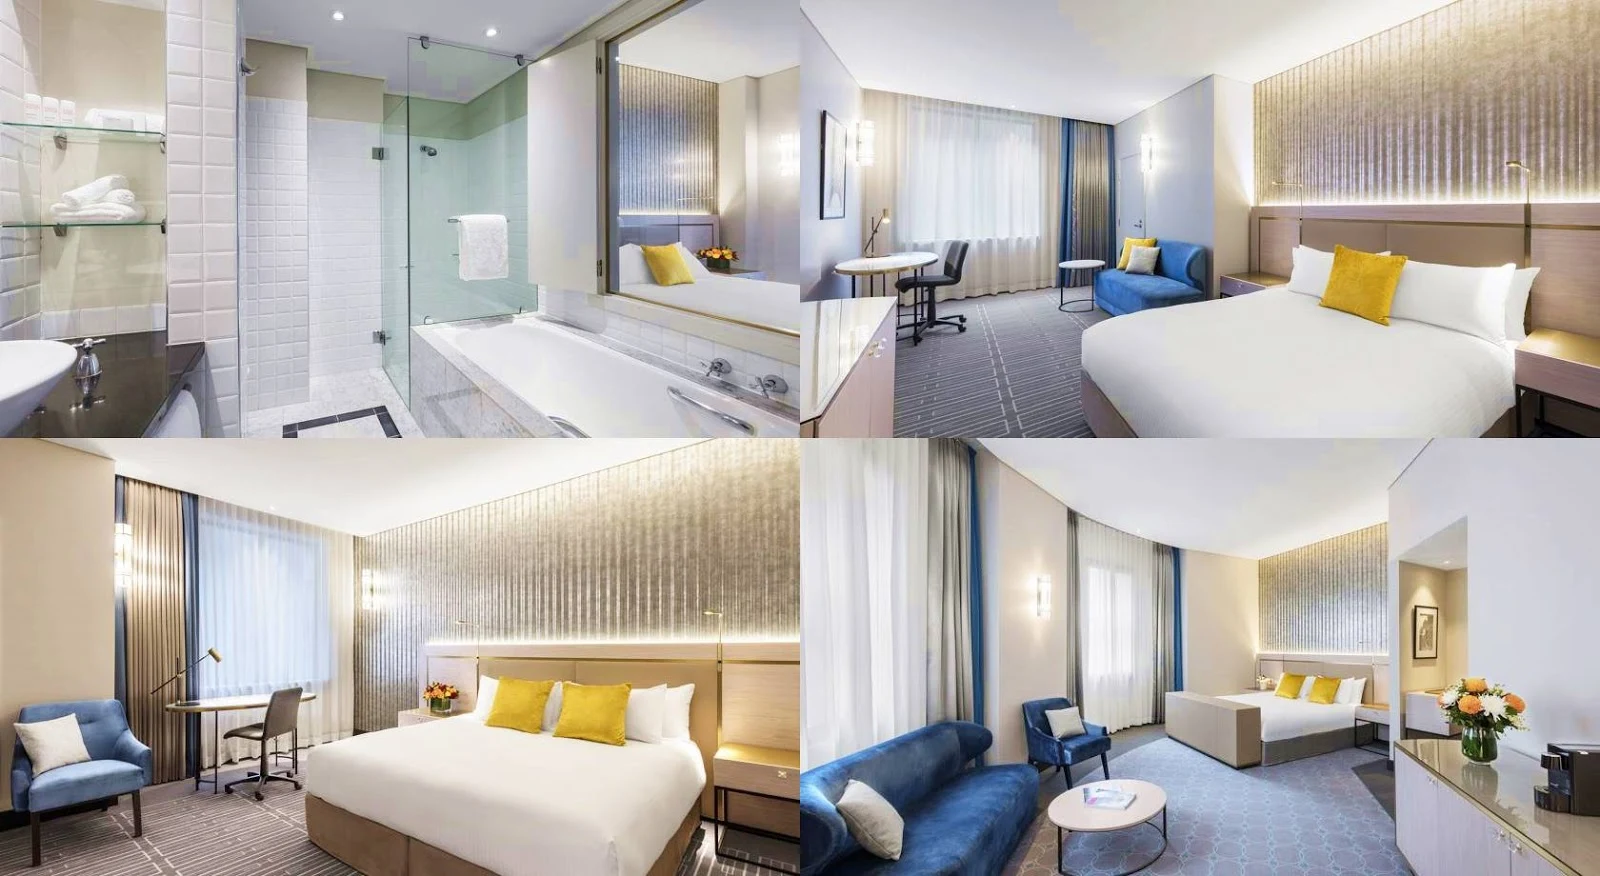 雪梨-住宿-推薦-悉尼麗笙世嘉酒店-Radisson-Blu-Plaza-雪梨飯店-雪梨旅館-雪梨酒店-雪梨公寓-雪梨民宿-澳洲-悉尼-Sydney-Hotel-Apartment-Travel-Australia